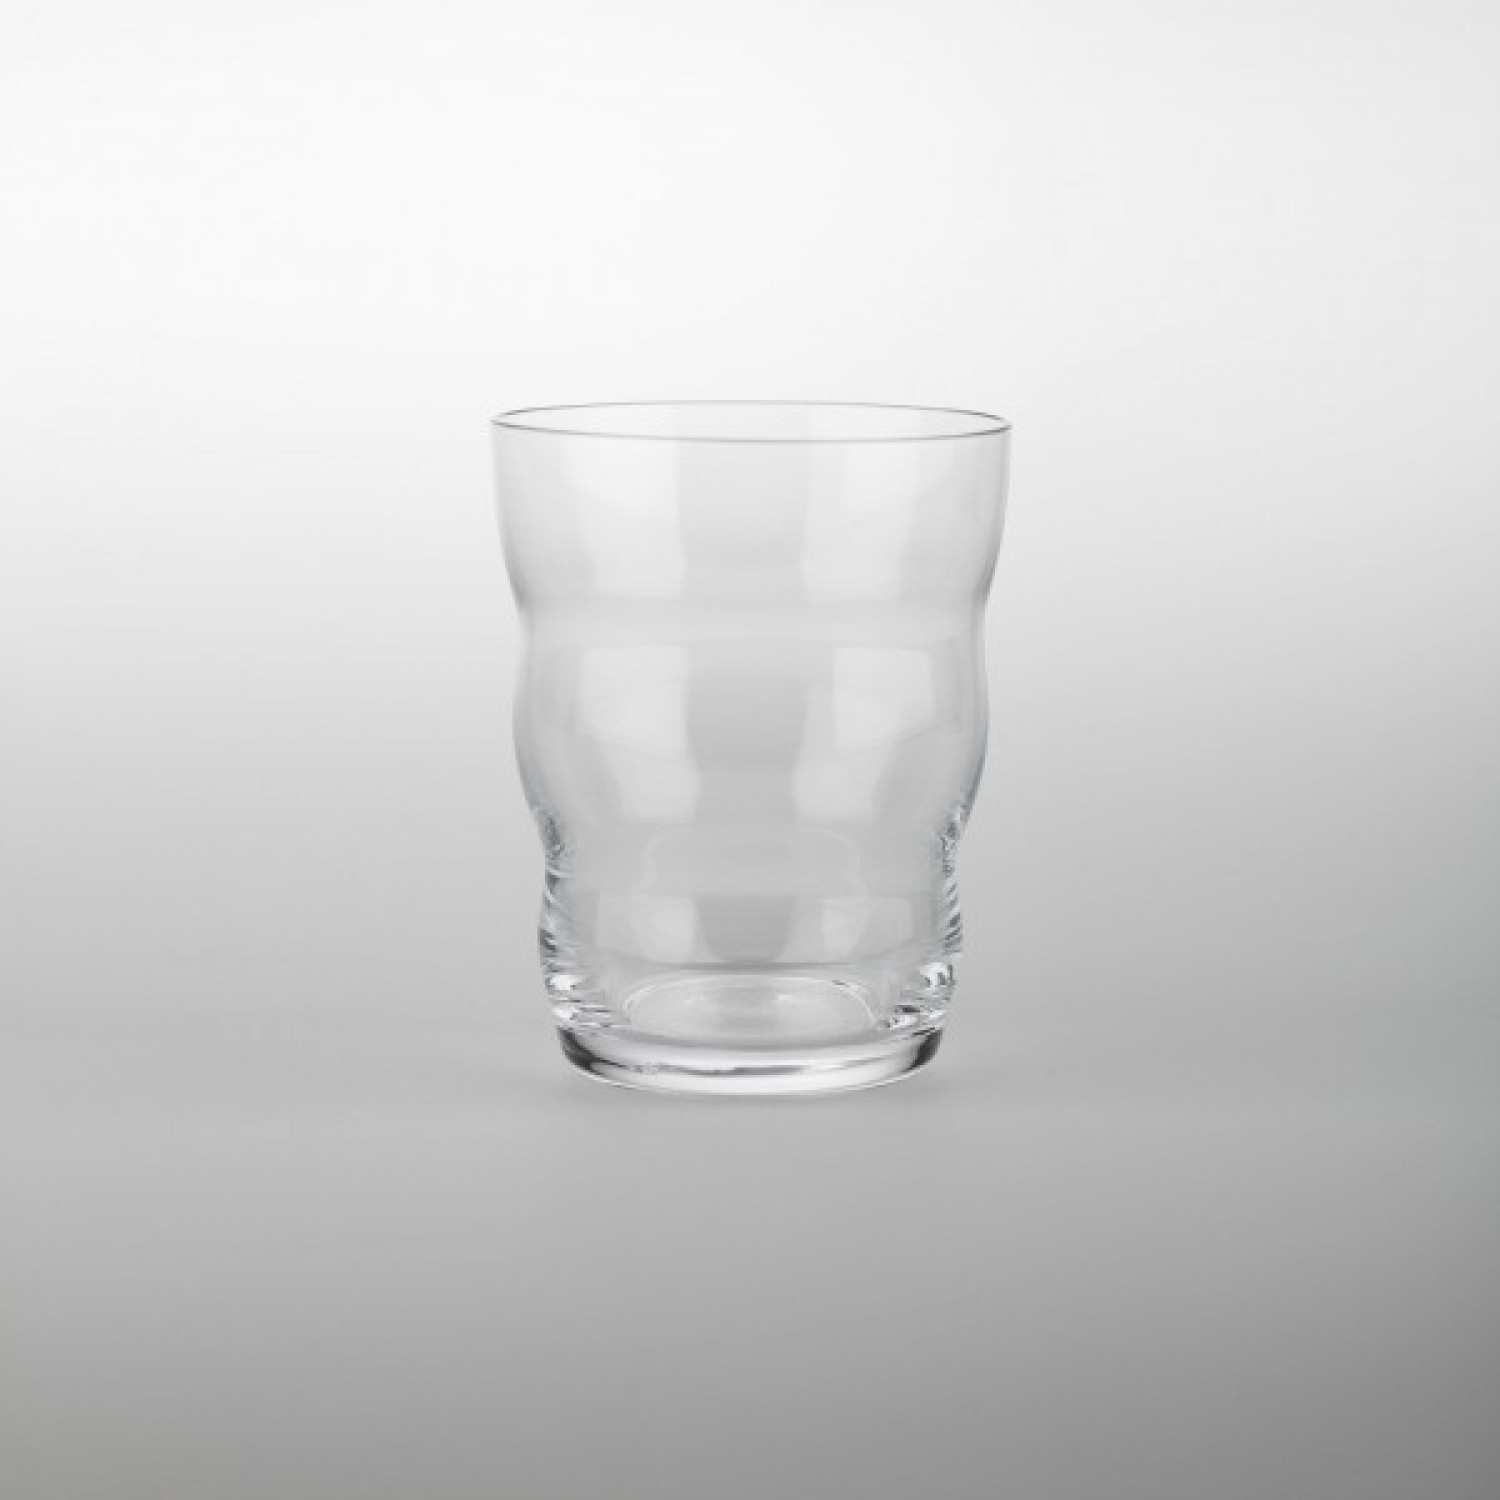 Nature’s Design Drinking Glass Jasmina Laser engraving